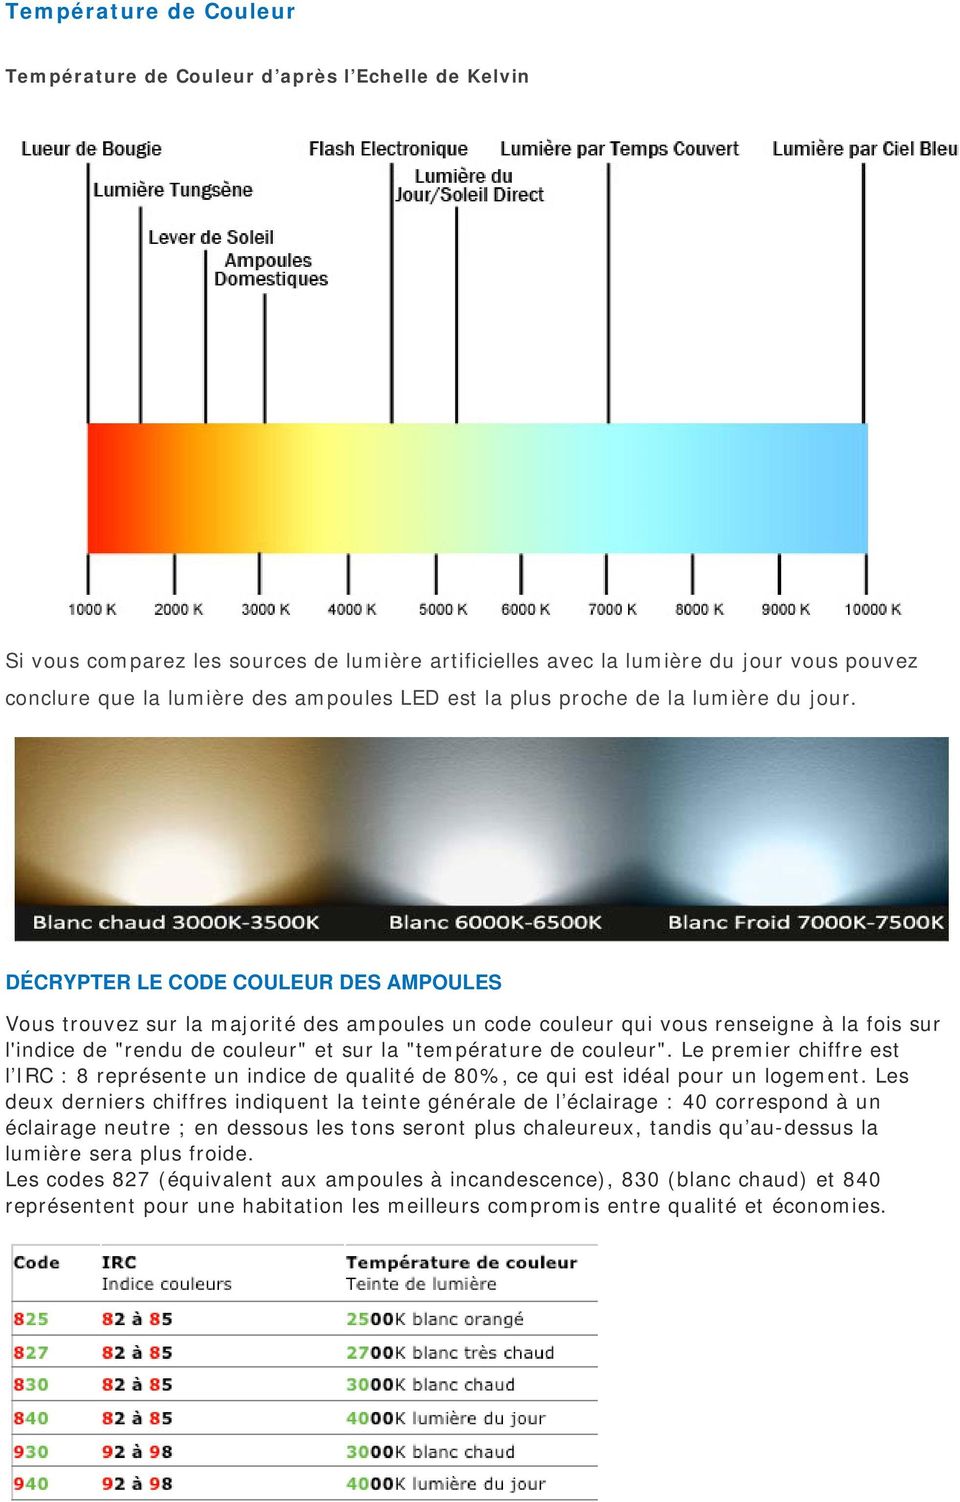 Les ampoules à LED CORRESPONDANCE LUMEN<> WATT - PDF Free Download